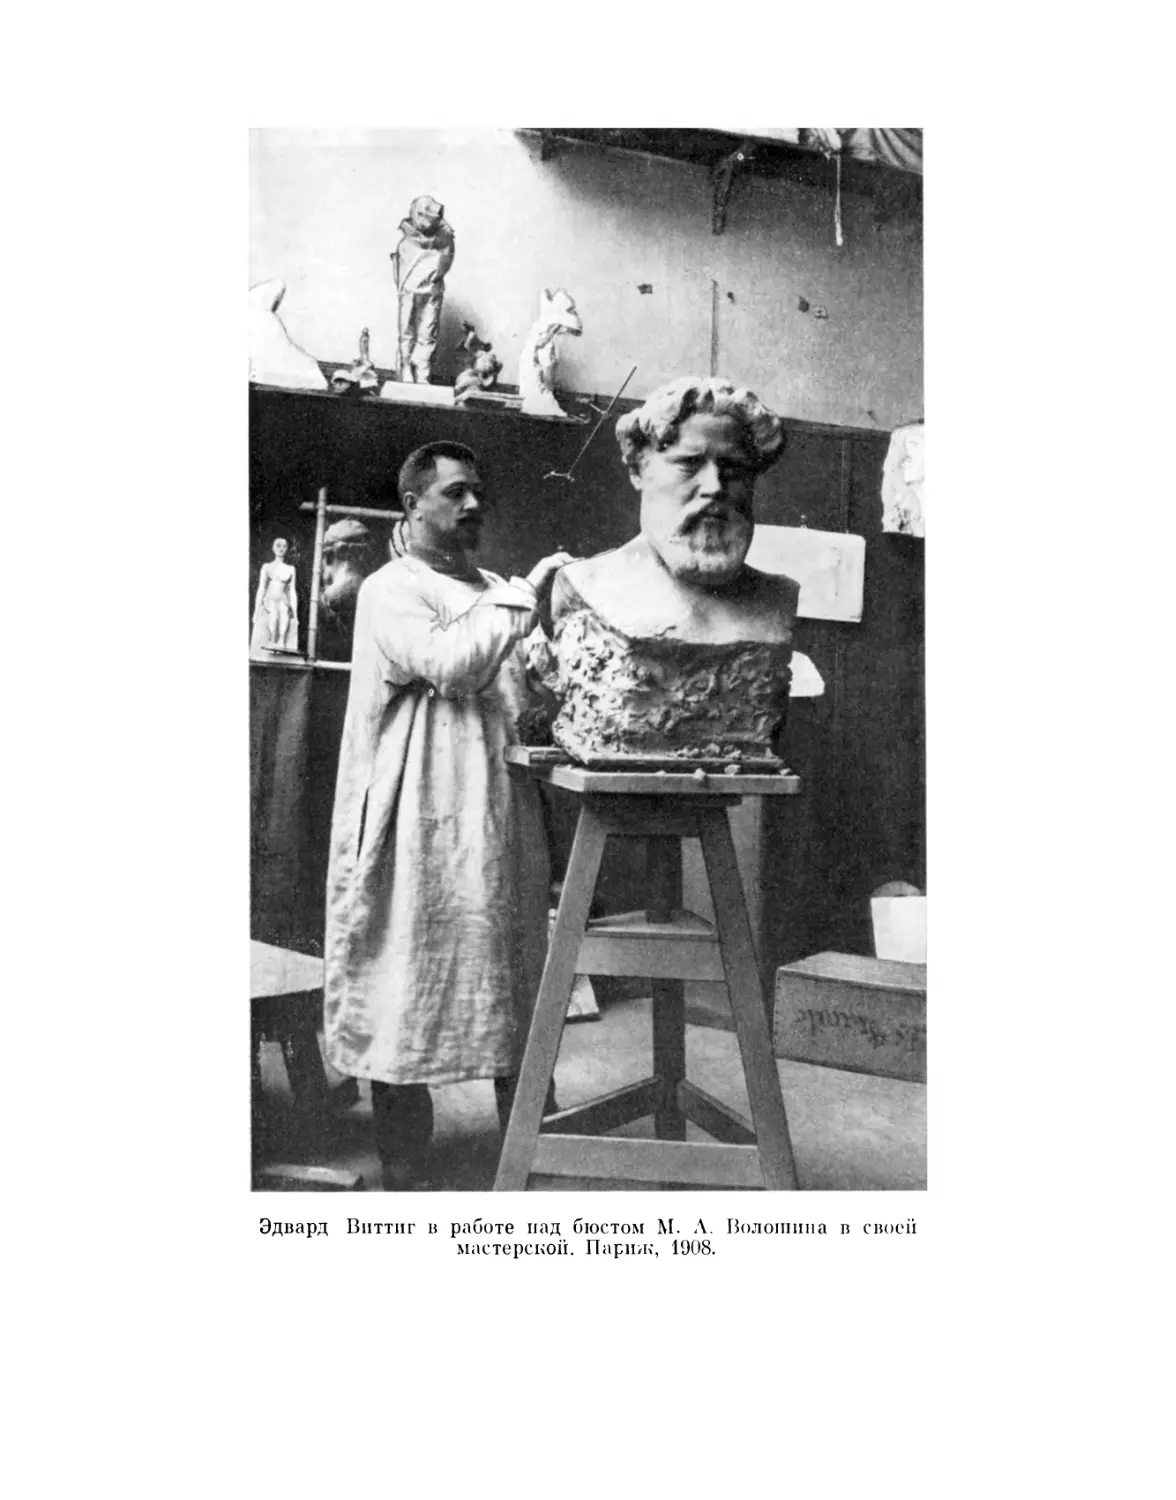 Эдвард Виттиг в работе над бюстом М. А. Волошина в своей мастерской. Париж. 1908